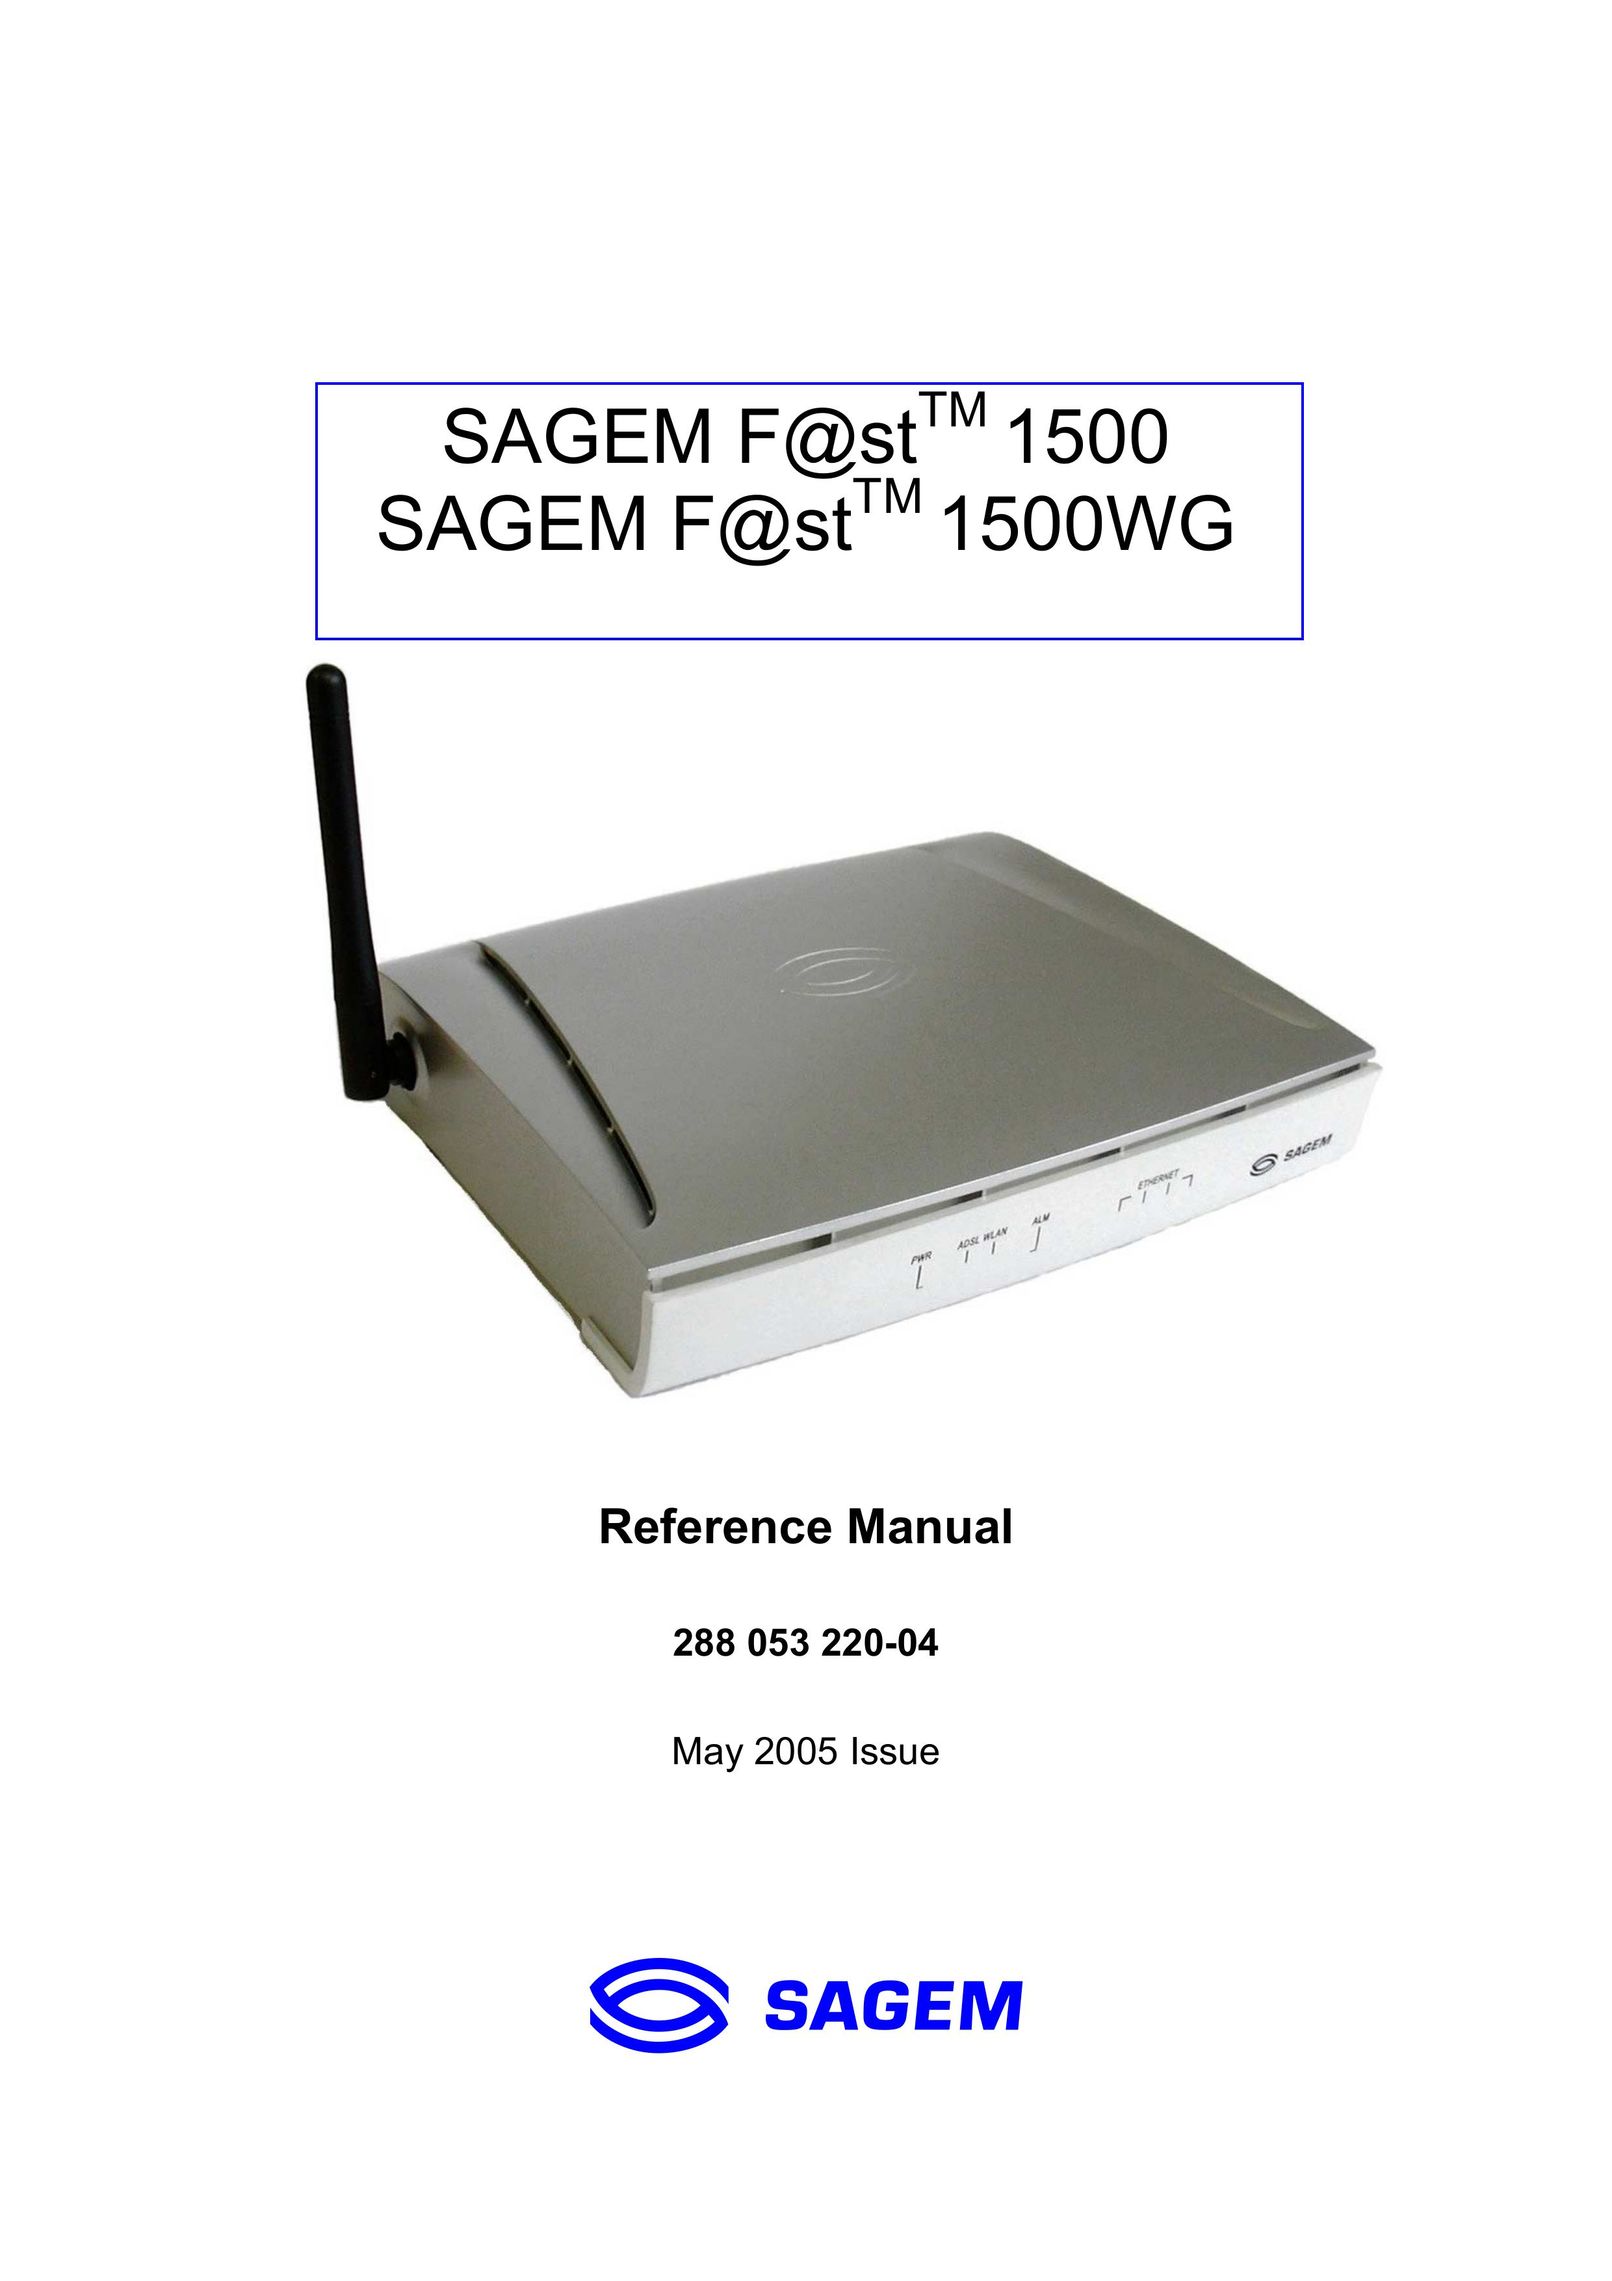 Sagem 1500WG Network Router User Manual